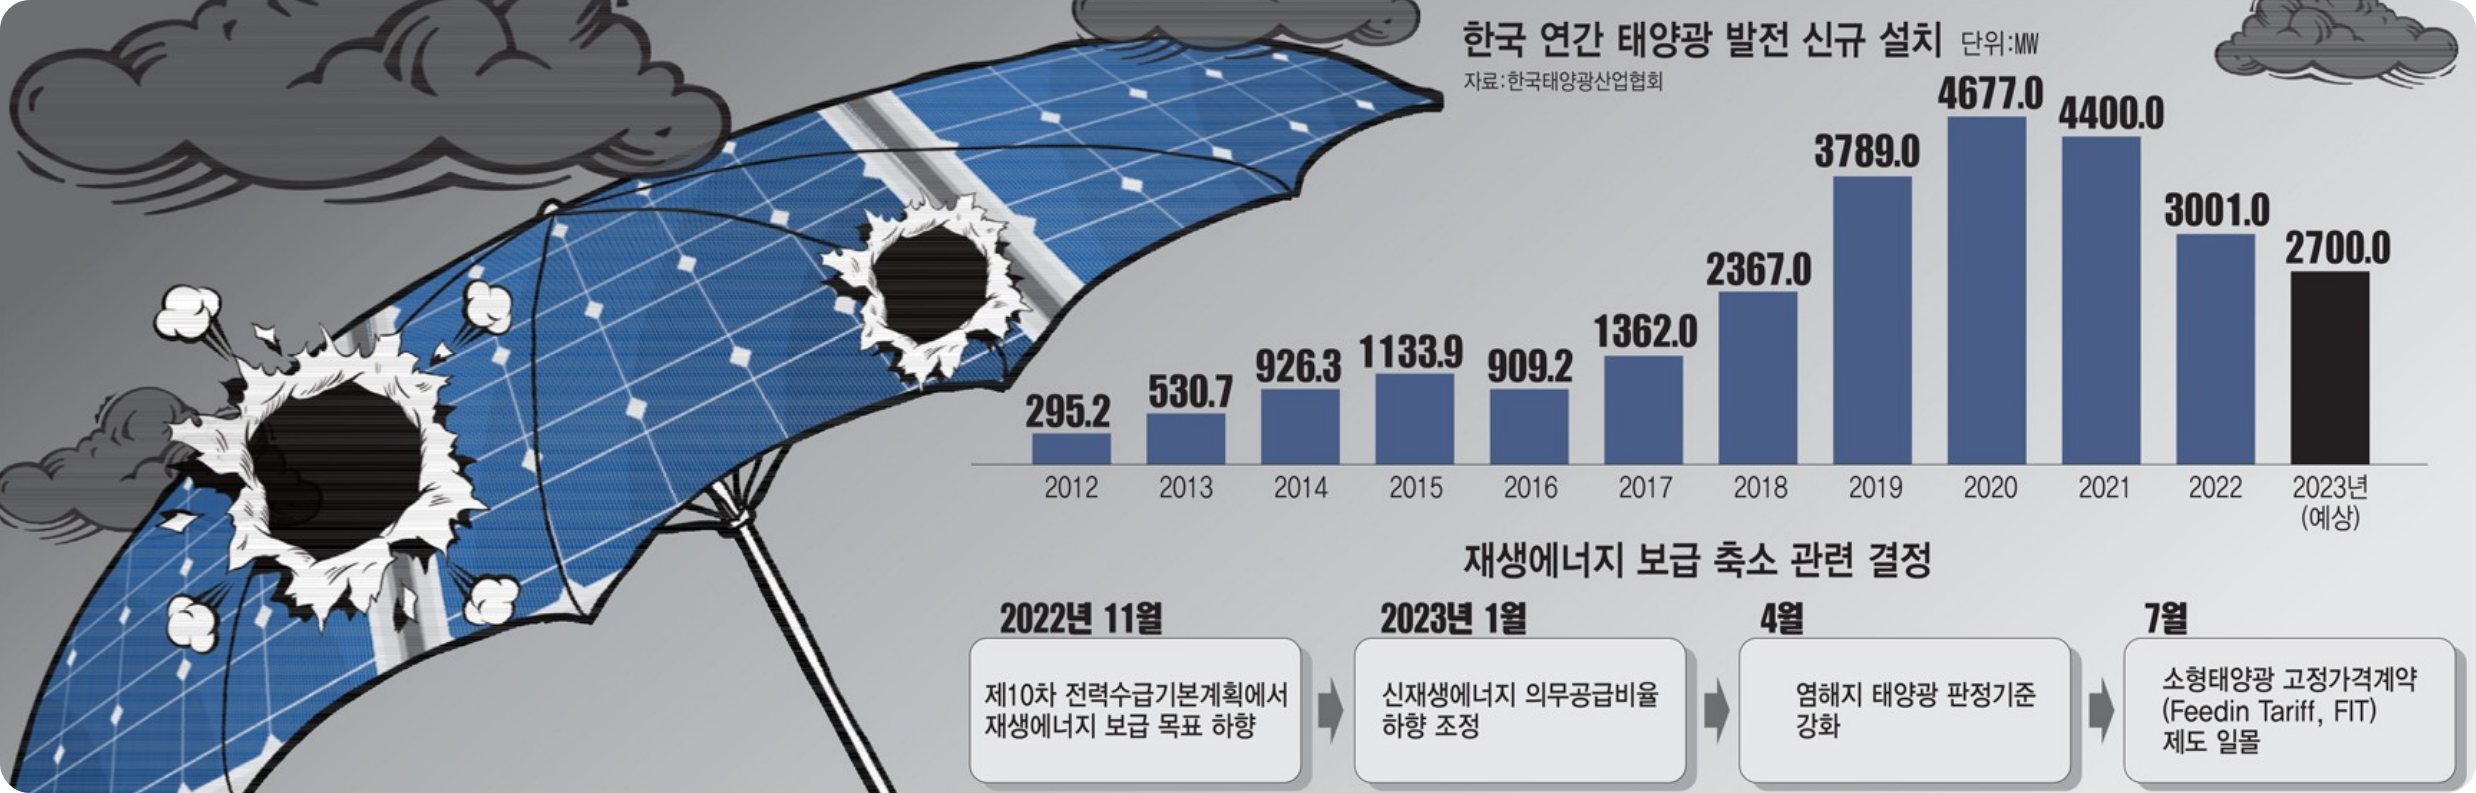 한국 연간 태양광 발전 신규 설치